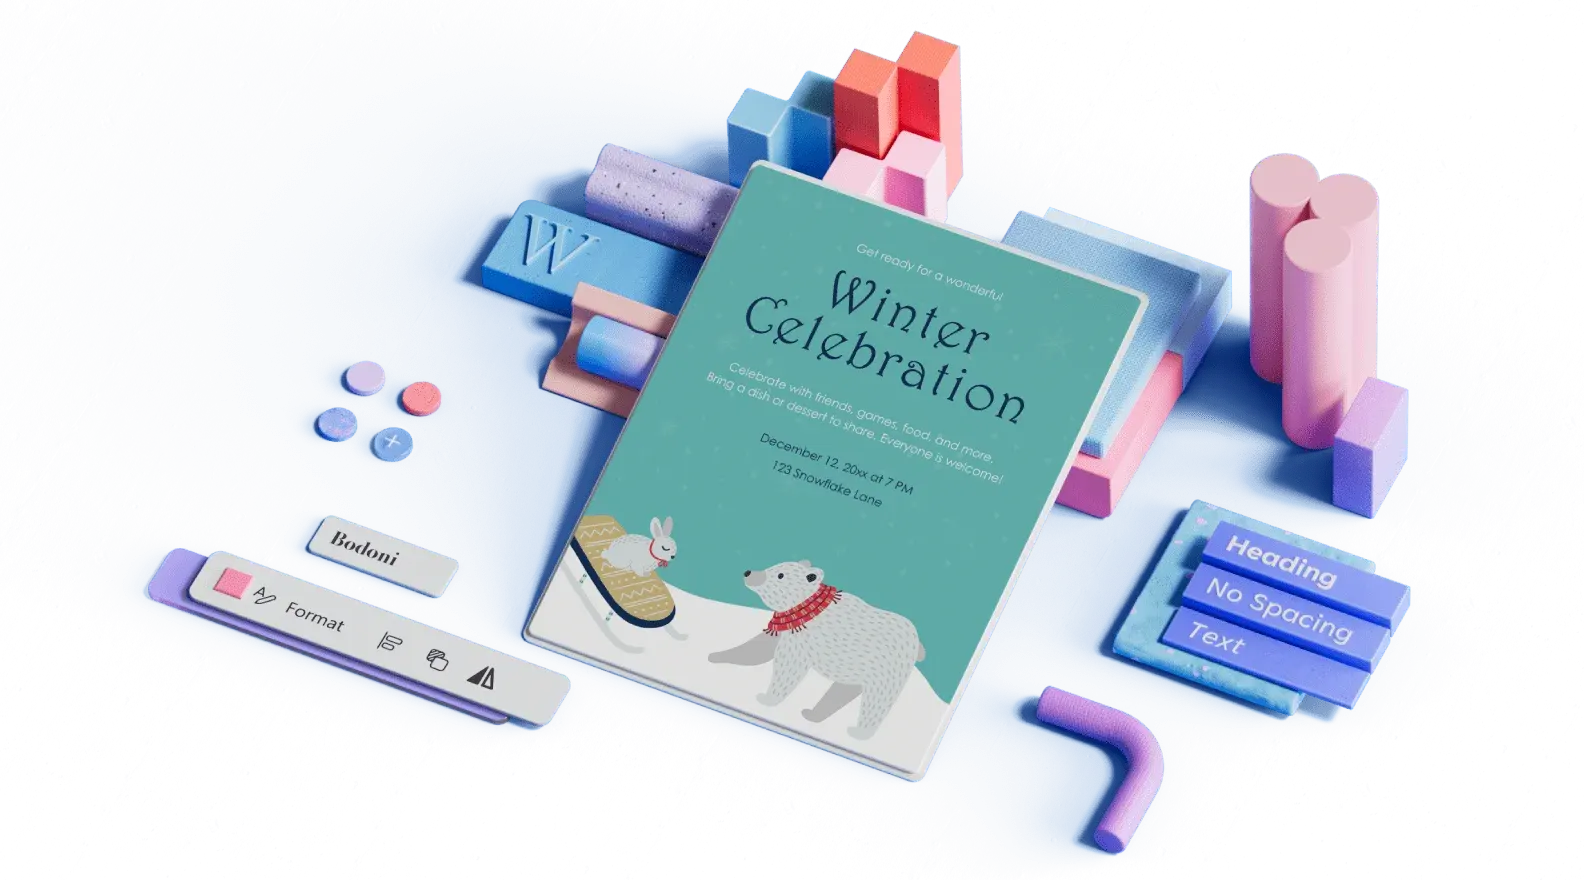 Шаблон за обявяване на зимен празник, заобиколен от 3D илюстрирани елементи за проектиране